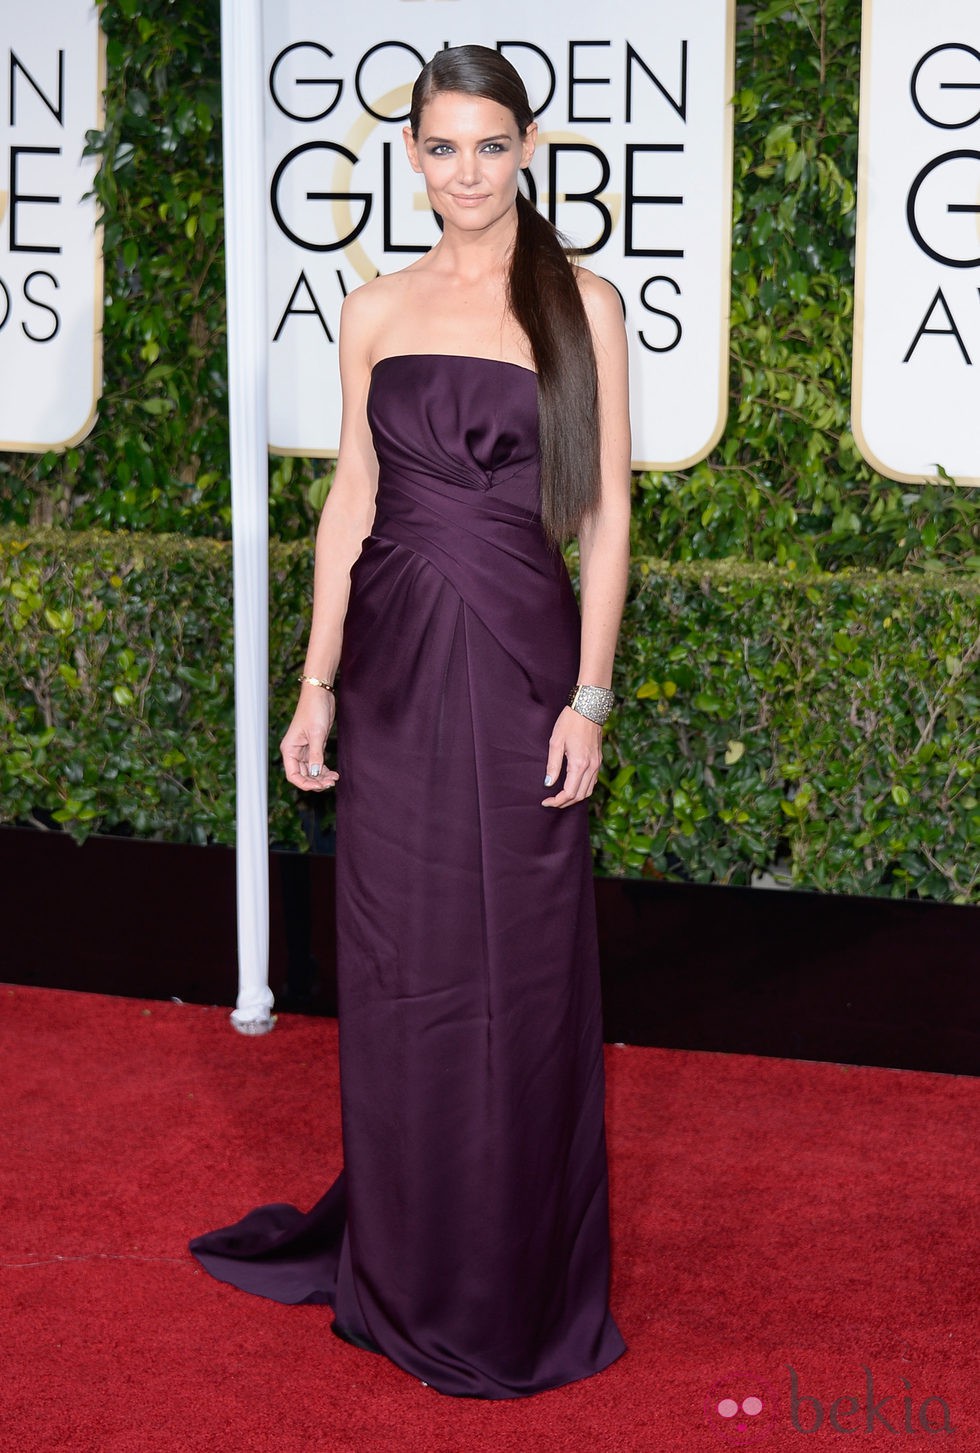 Katie Holmes en la alfombra roja de los Globos de Oro 2015